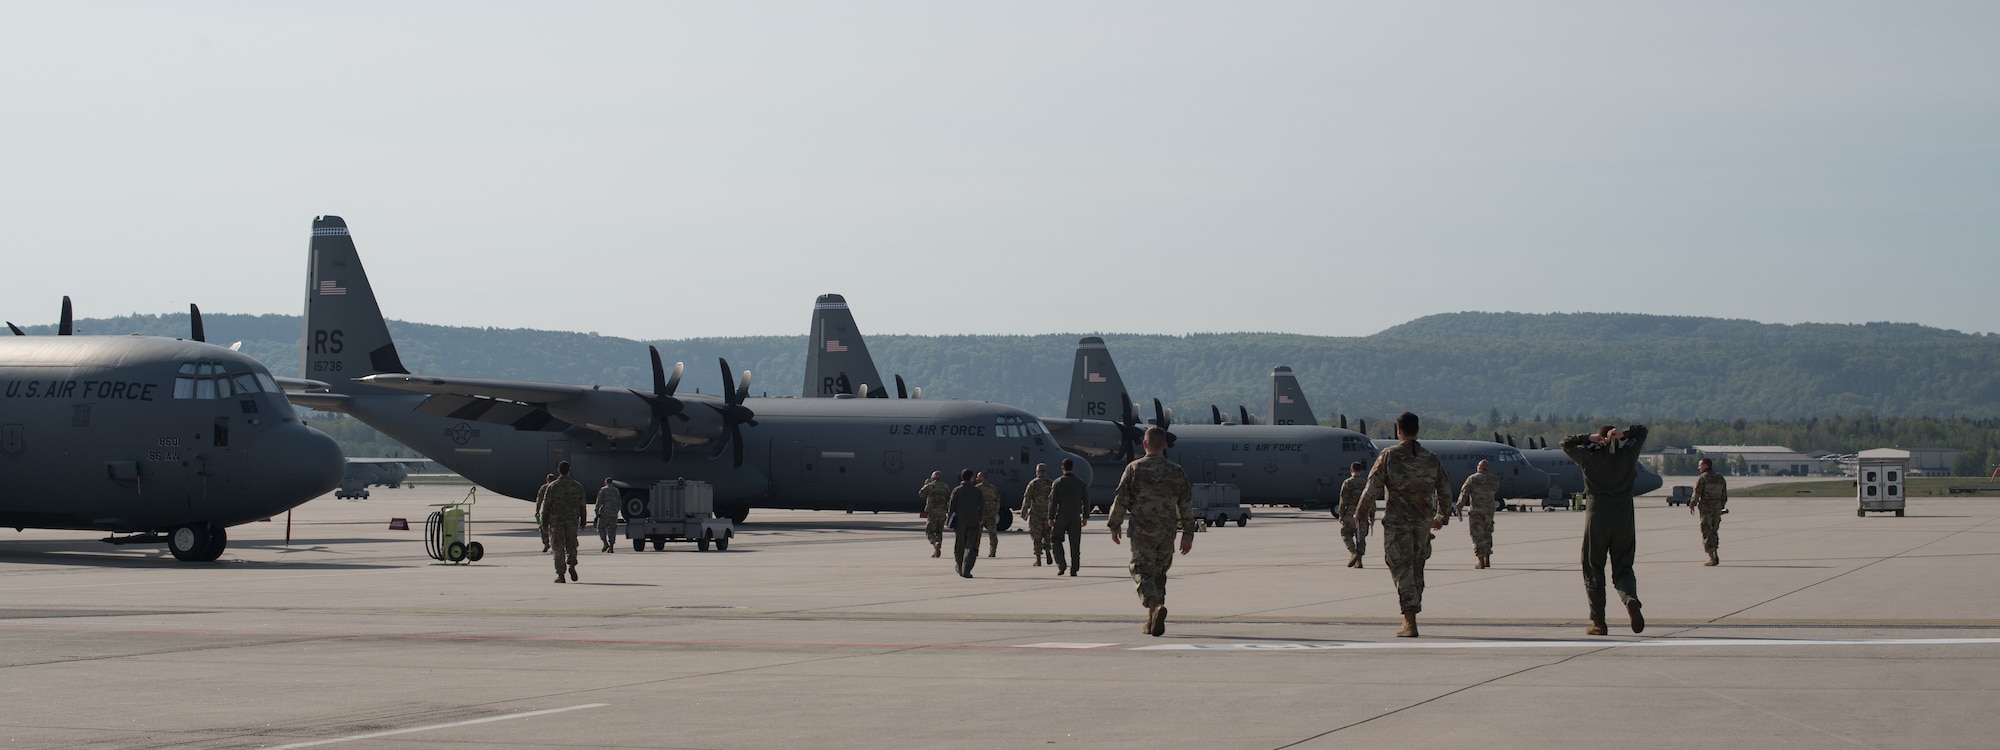 A group of Airmen walk toward a fleet of aircraft.